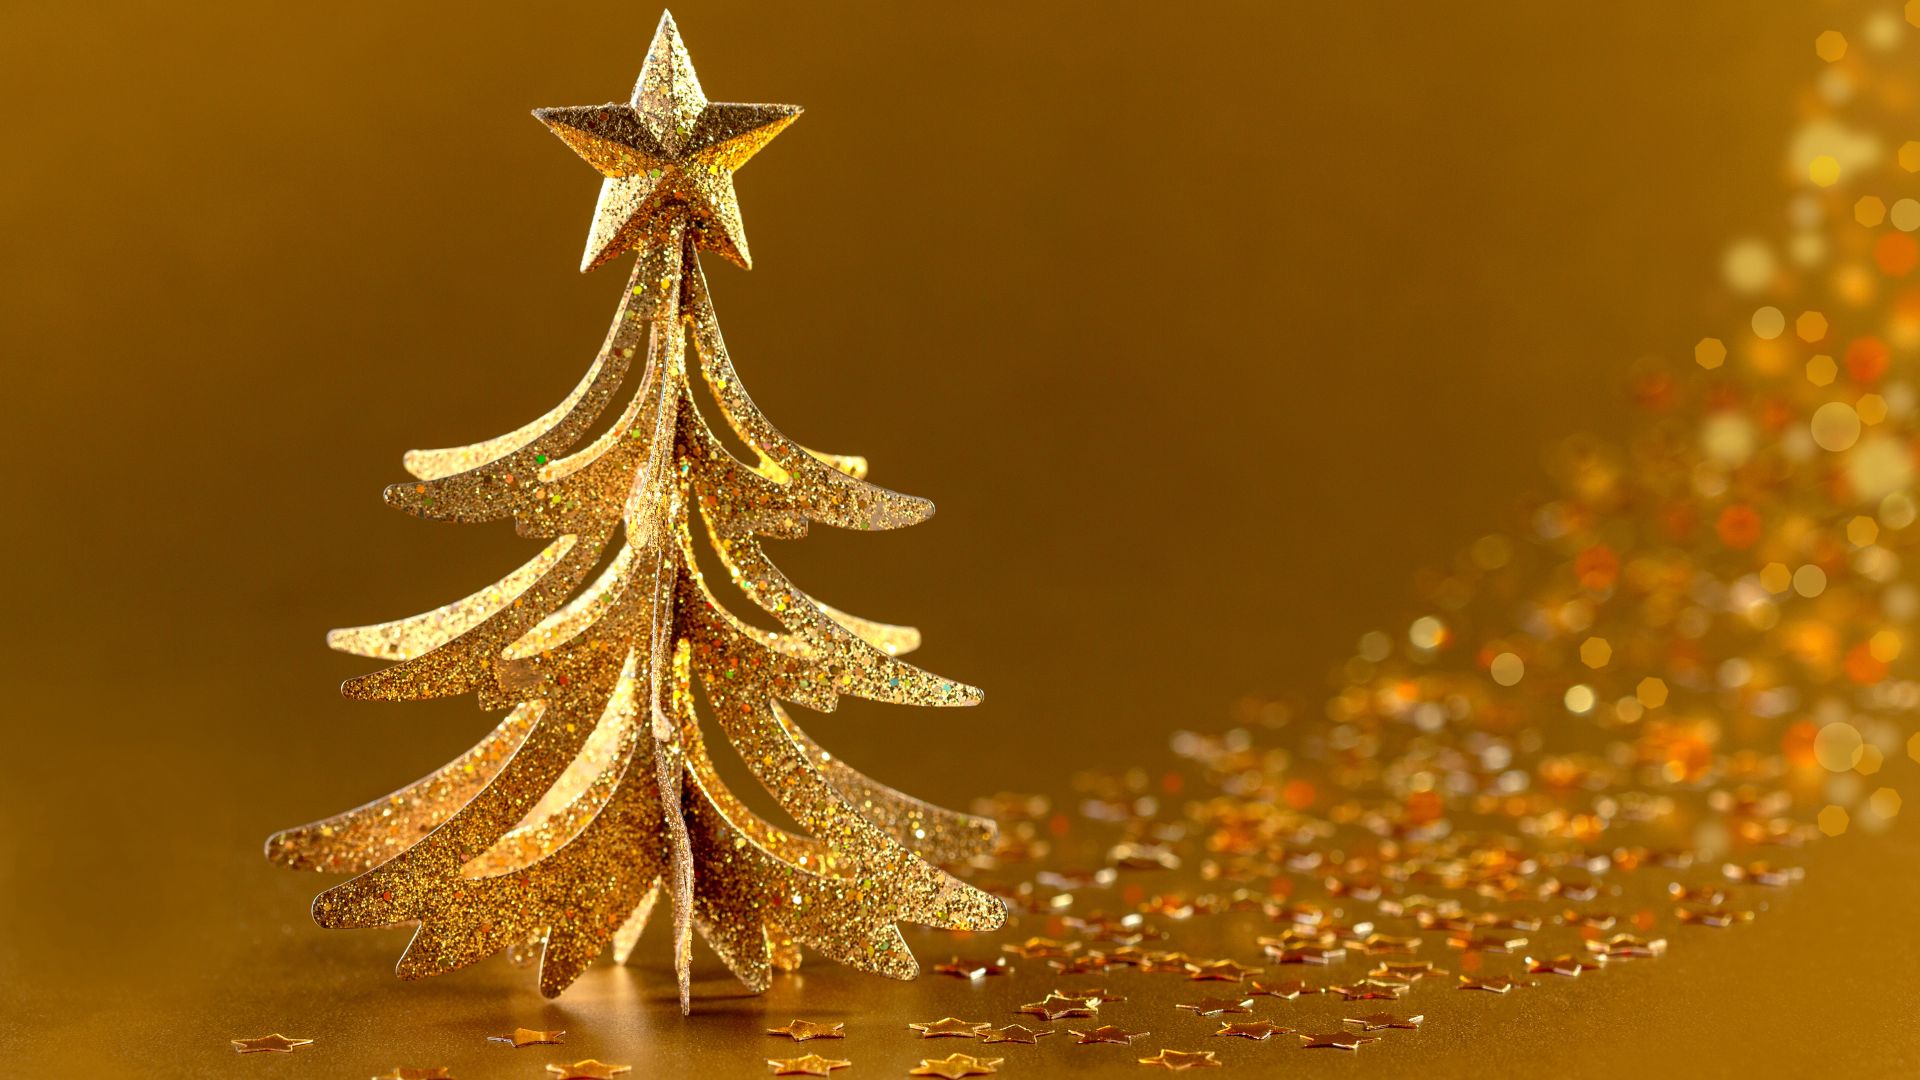 Imagem de fundo dourado e em destaque uma árvore de Natal pequena, também na cor dourada. Na ponta da árvore, temos uma estrela de 5 pontas.